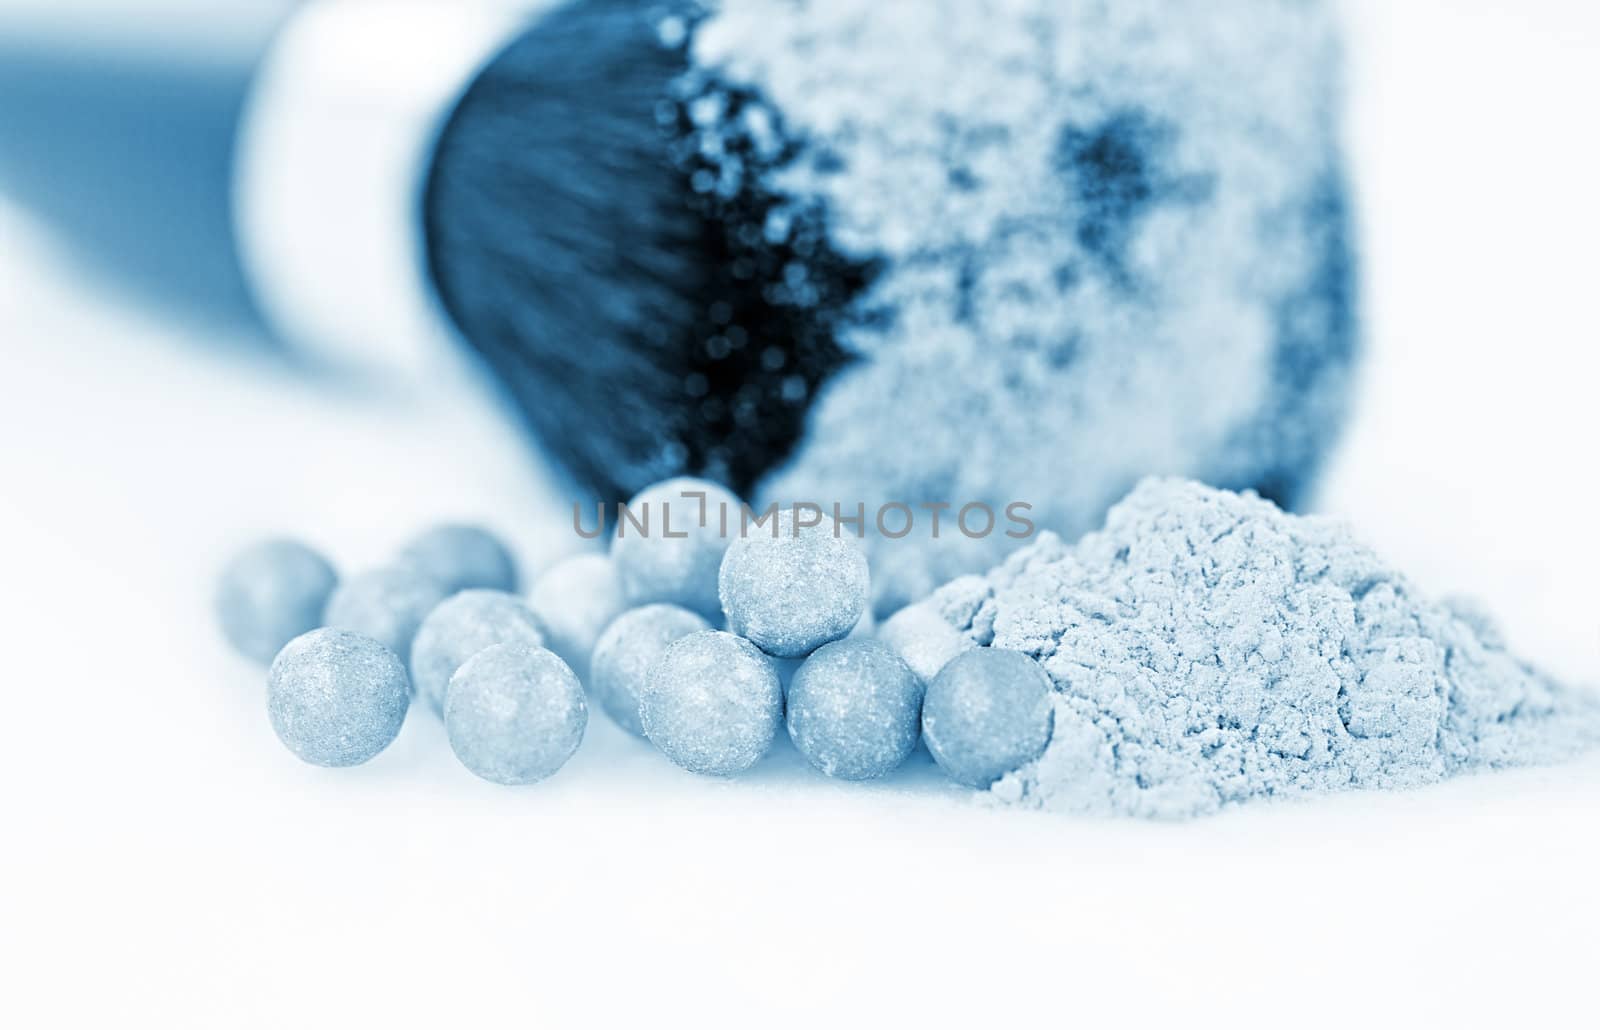 powder with cosmetic brush, macro shot  by motorolka